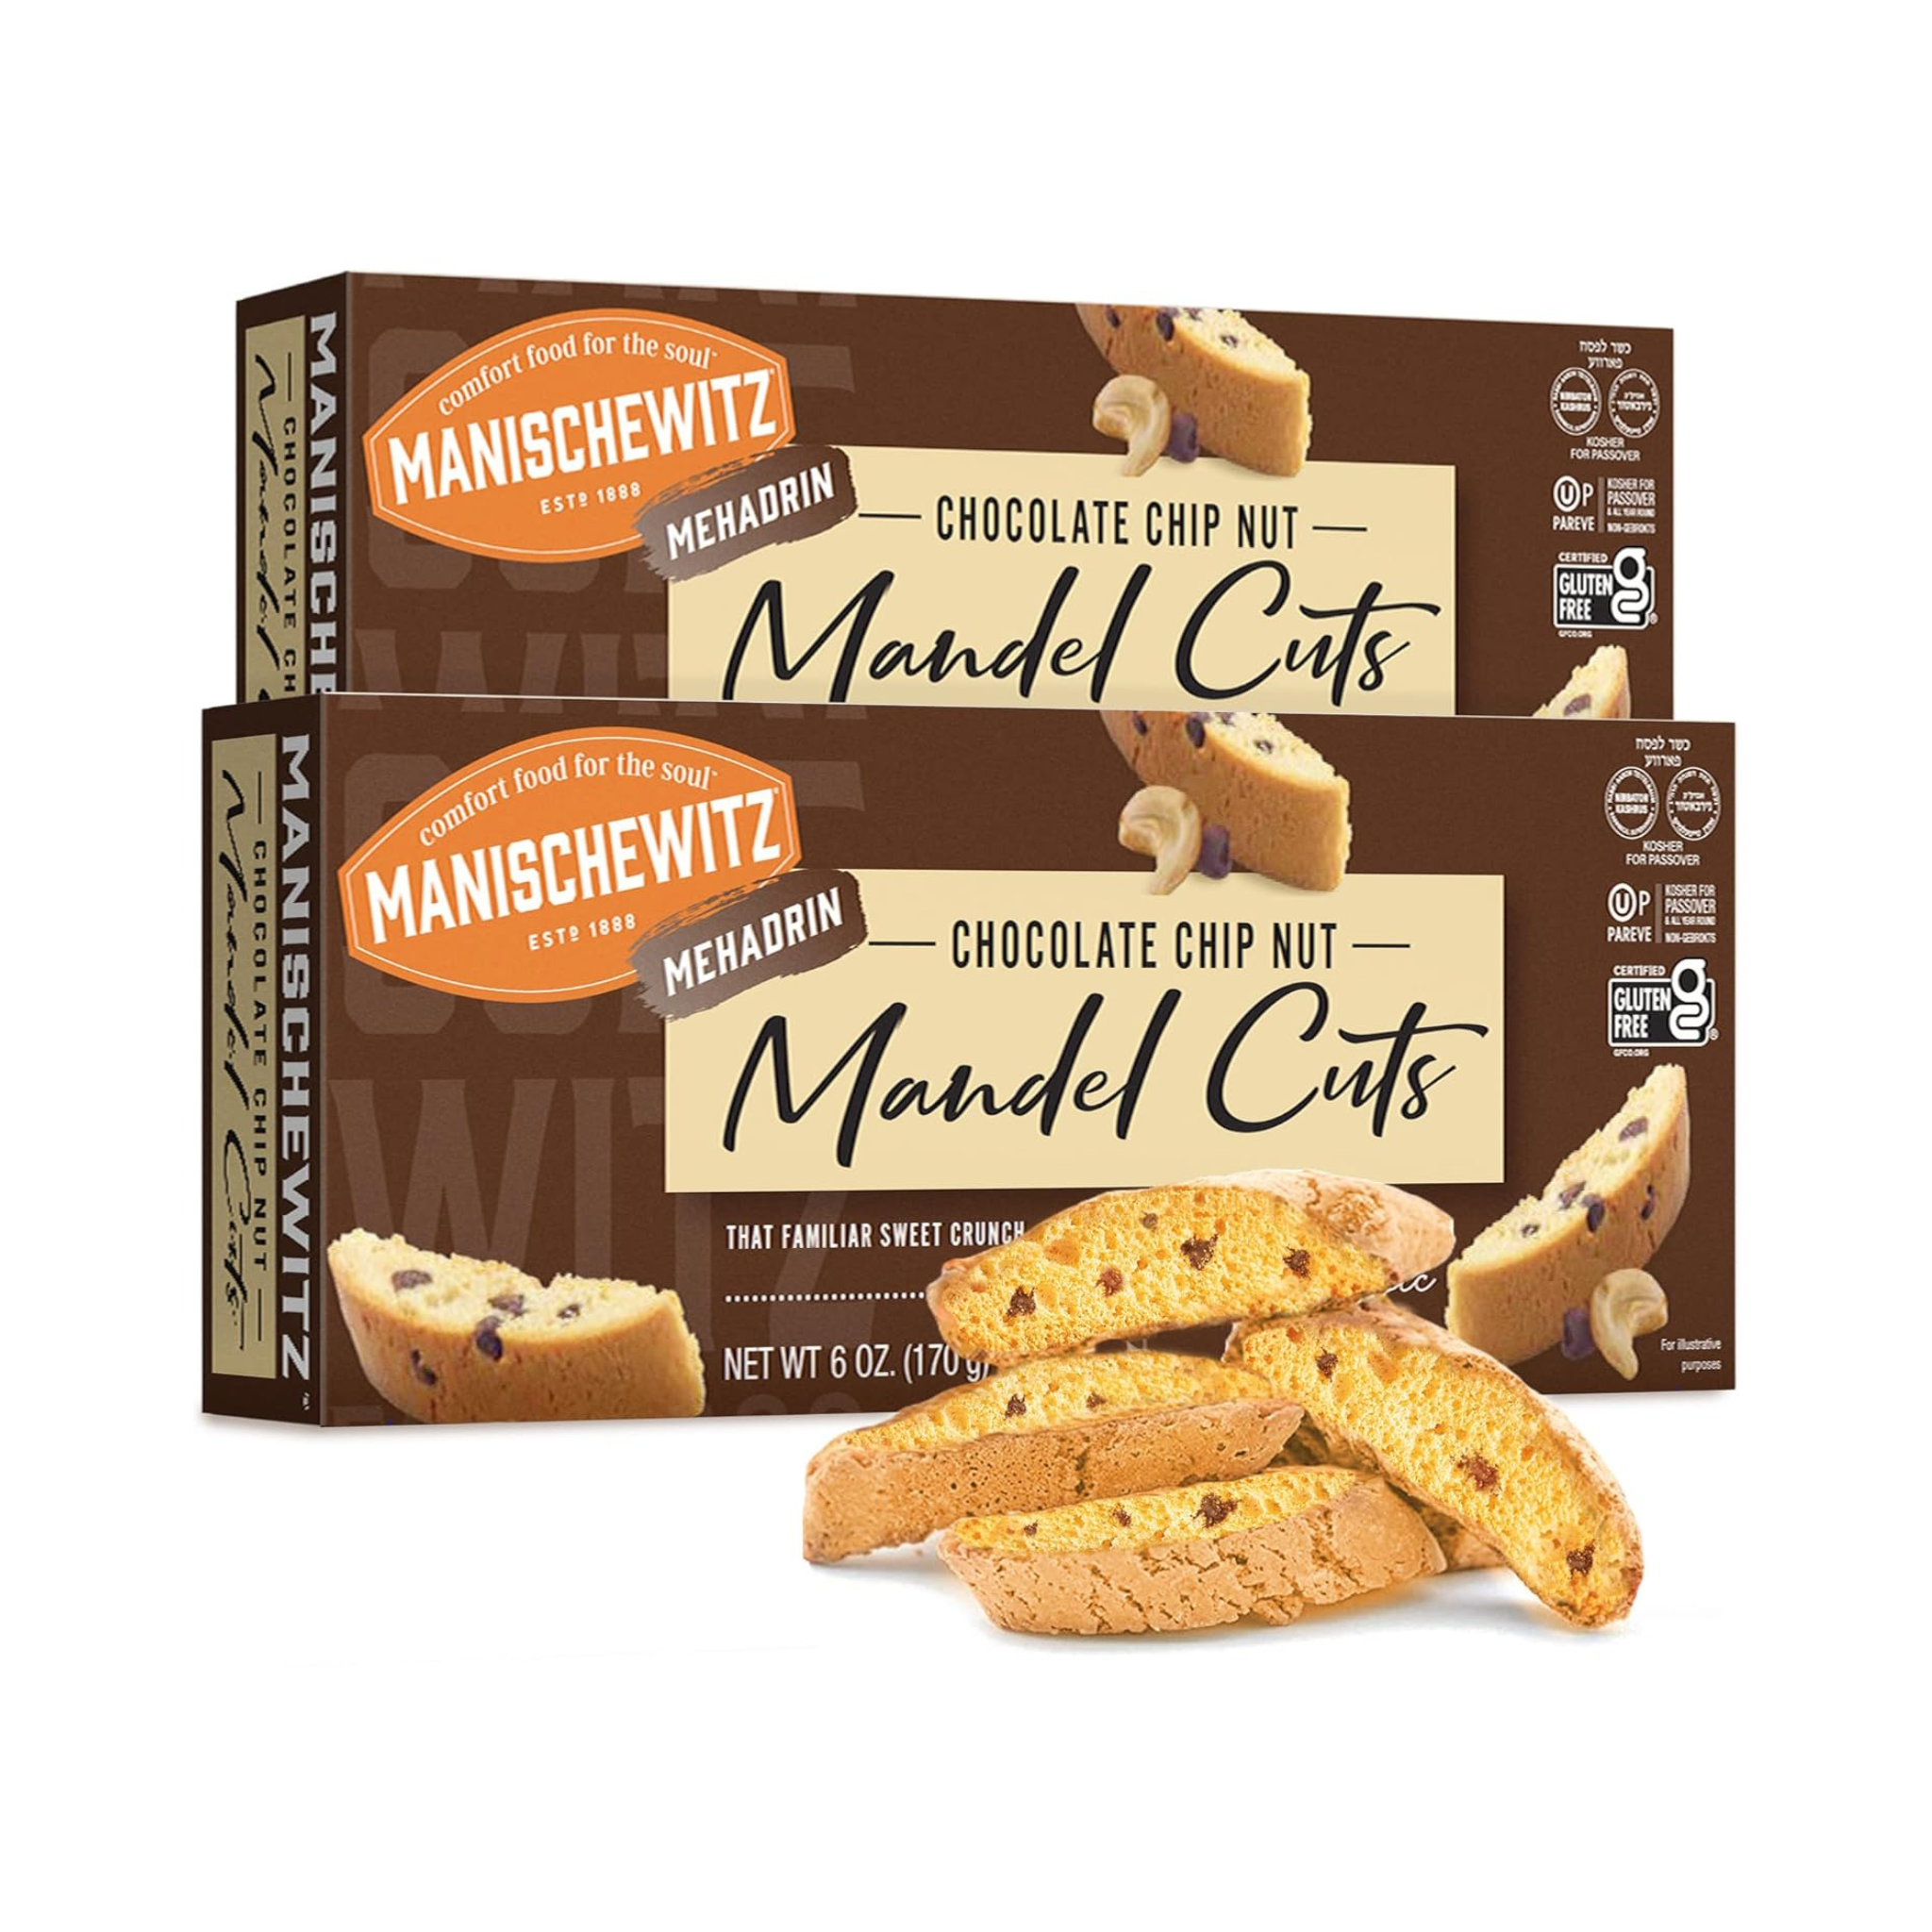 Manischewitz Chocolate Chip Nut Mangel Cuts, OU Passover, 2 Pack